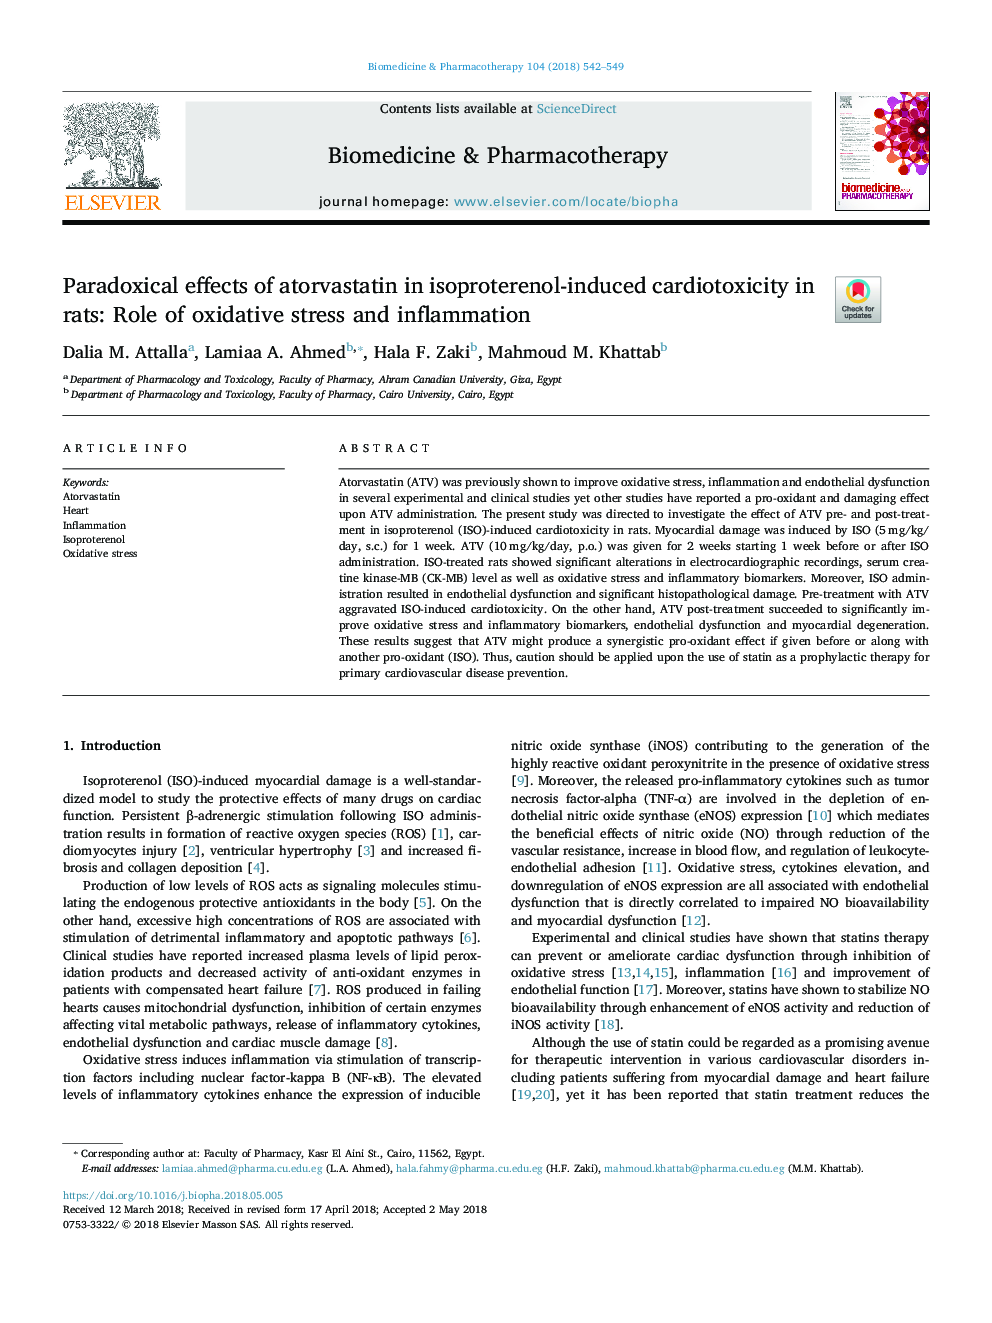 اثرات پارادوکسیک آتورواستاتین در سمیت قلبی ناشی از ایزوپروترنول در موش صحرایی: نقش استرس اکسیداتیو و التهاب 